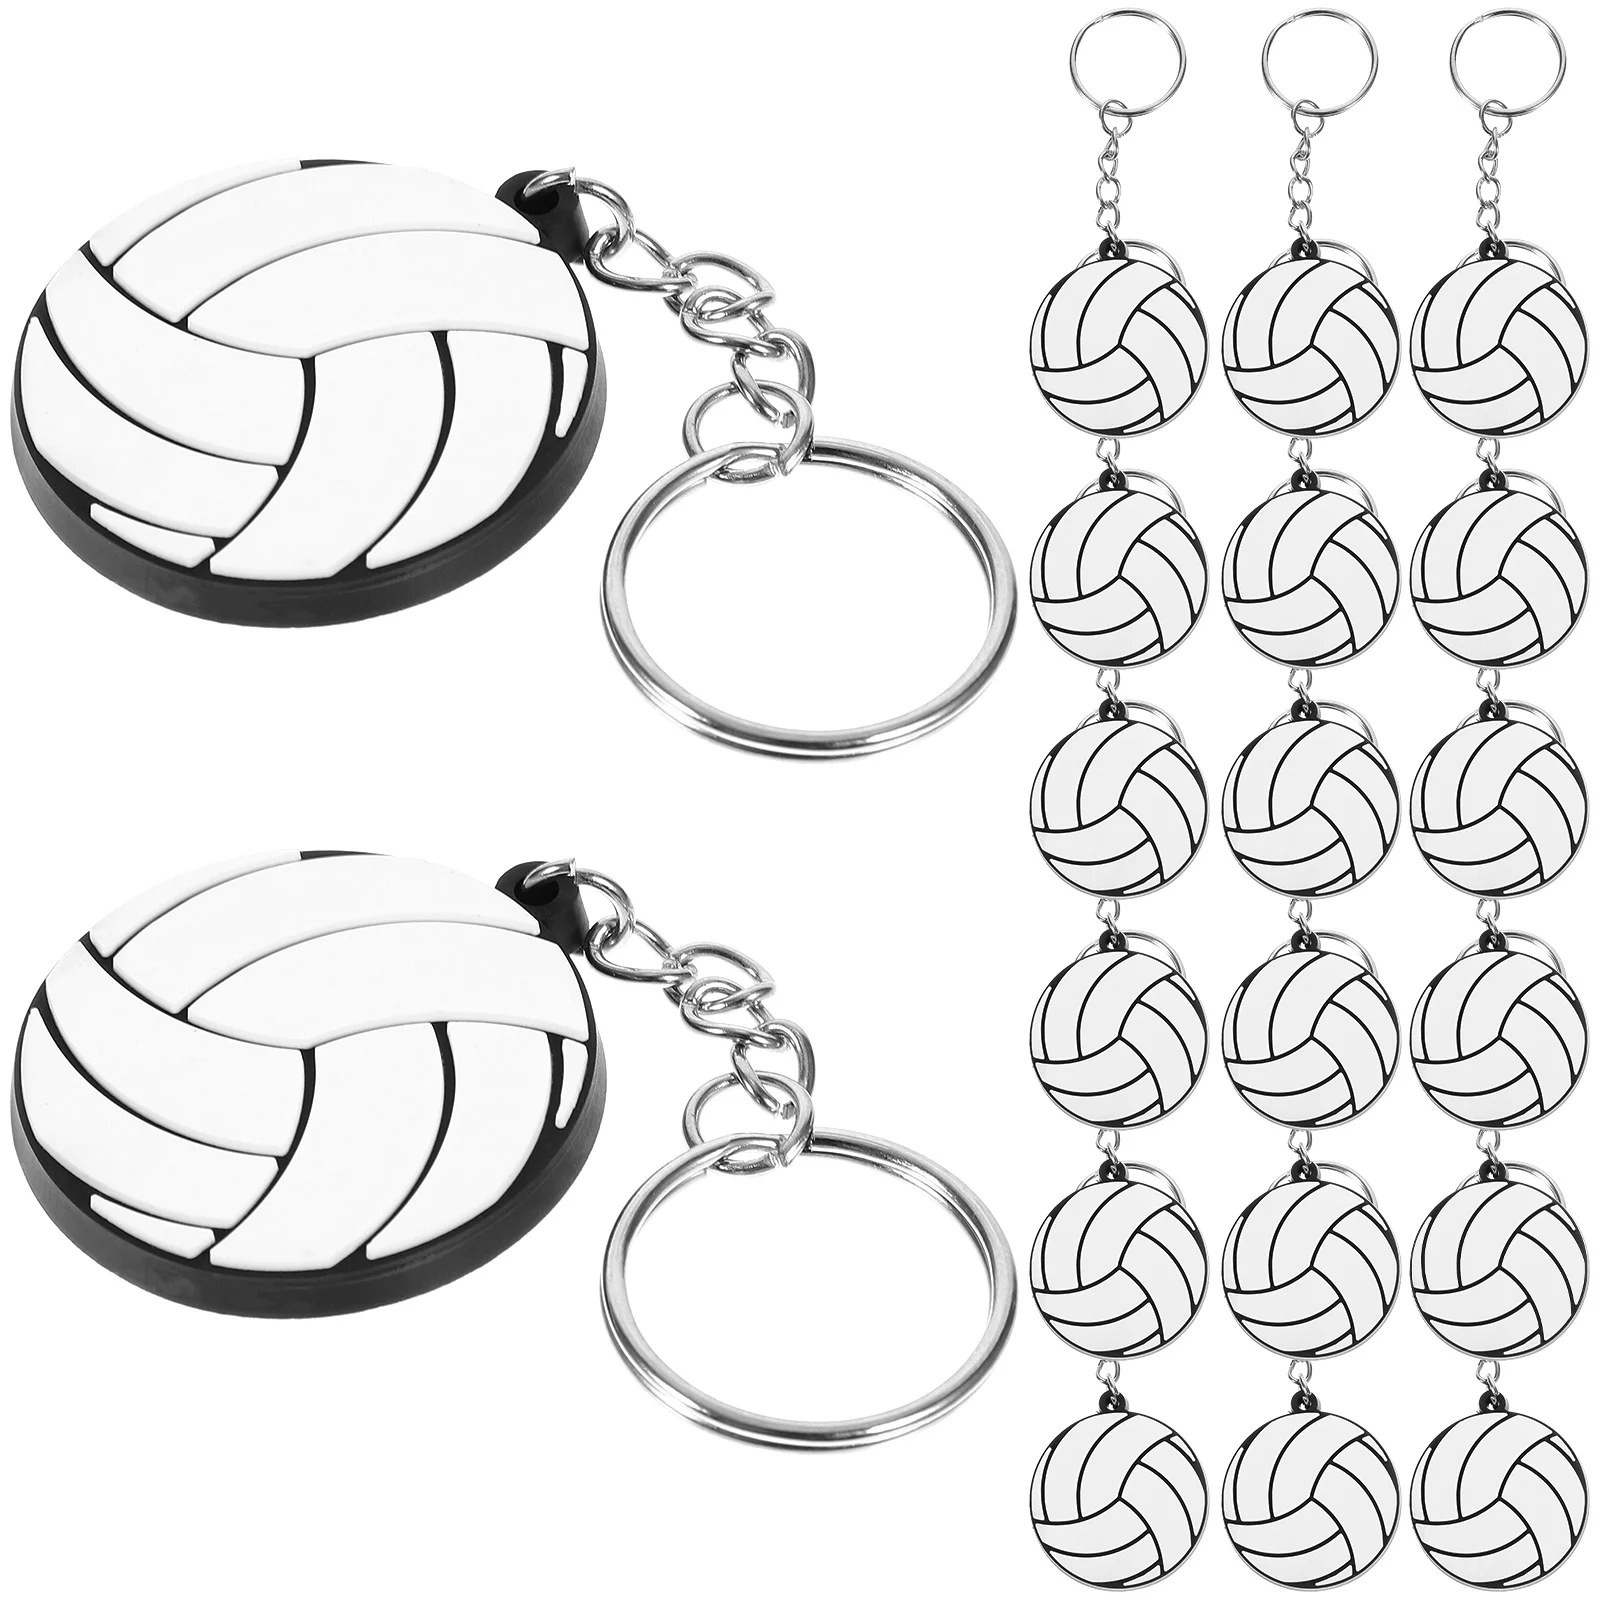 

Брелки для автомобильных ключей, волейбола, сумки, подвесные кулоны, баскетбольные украшения, волейбол, технические сувениры